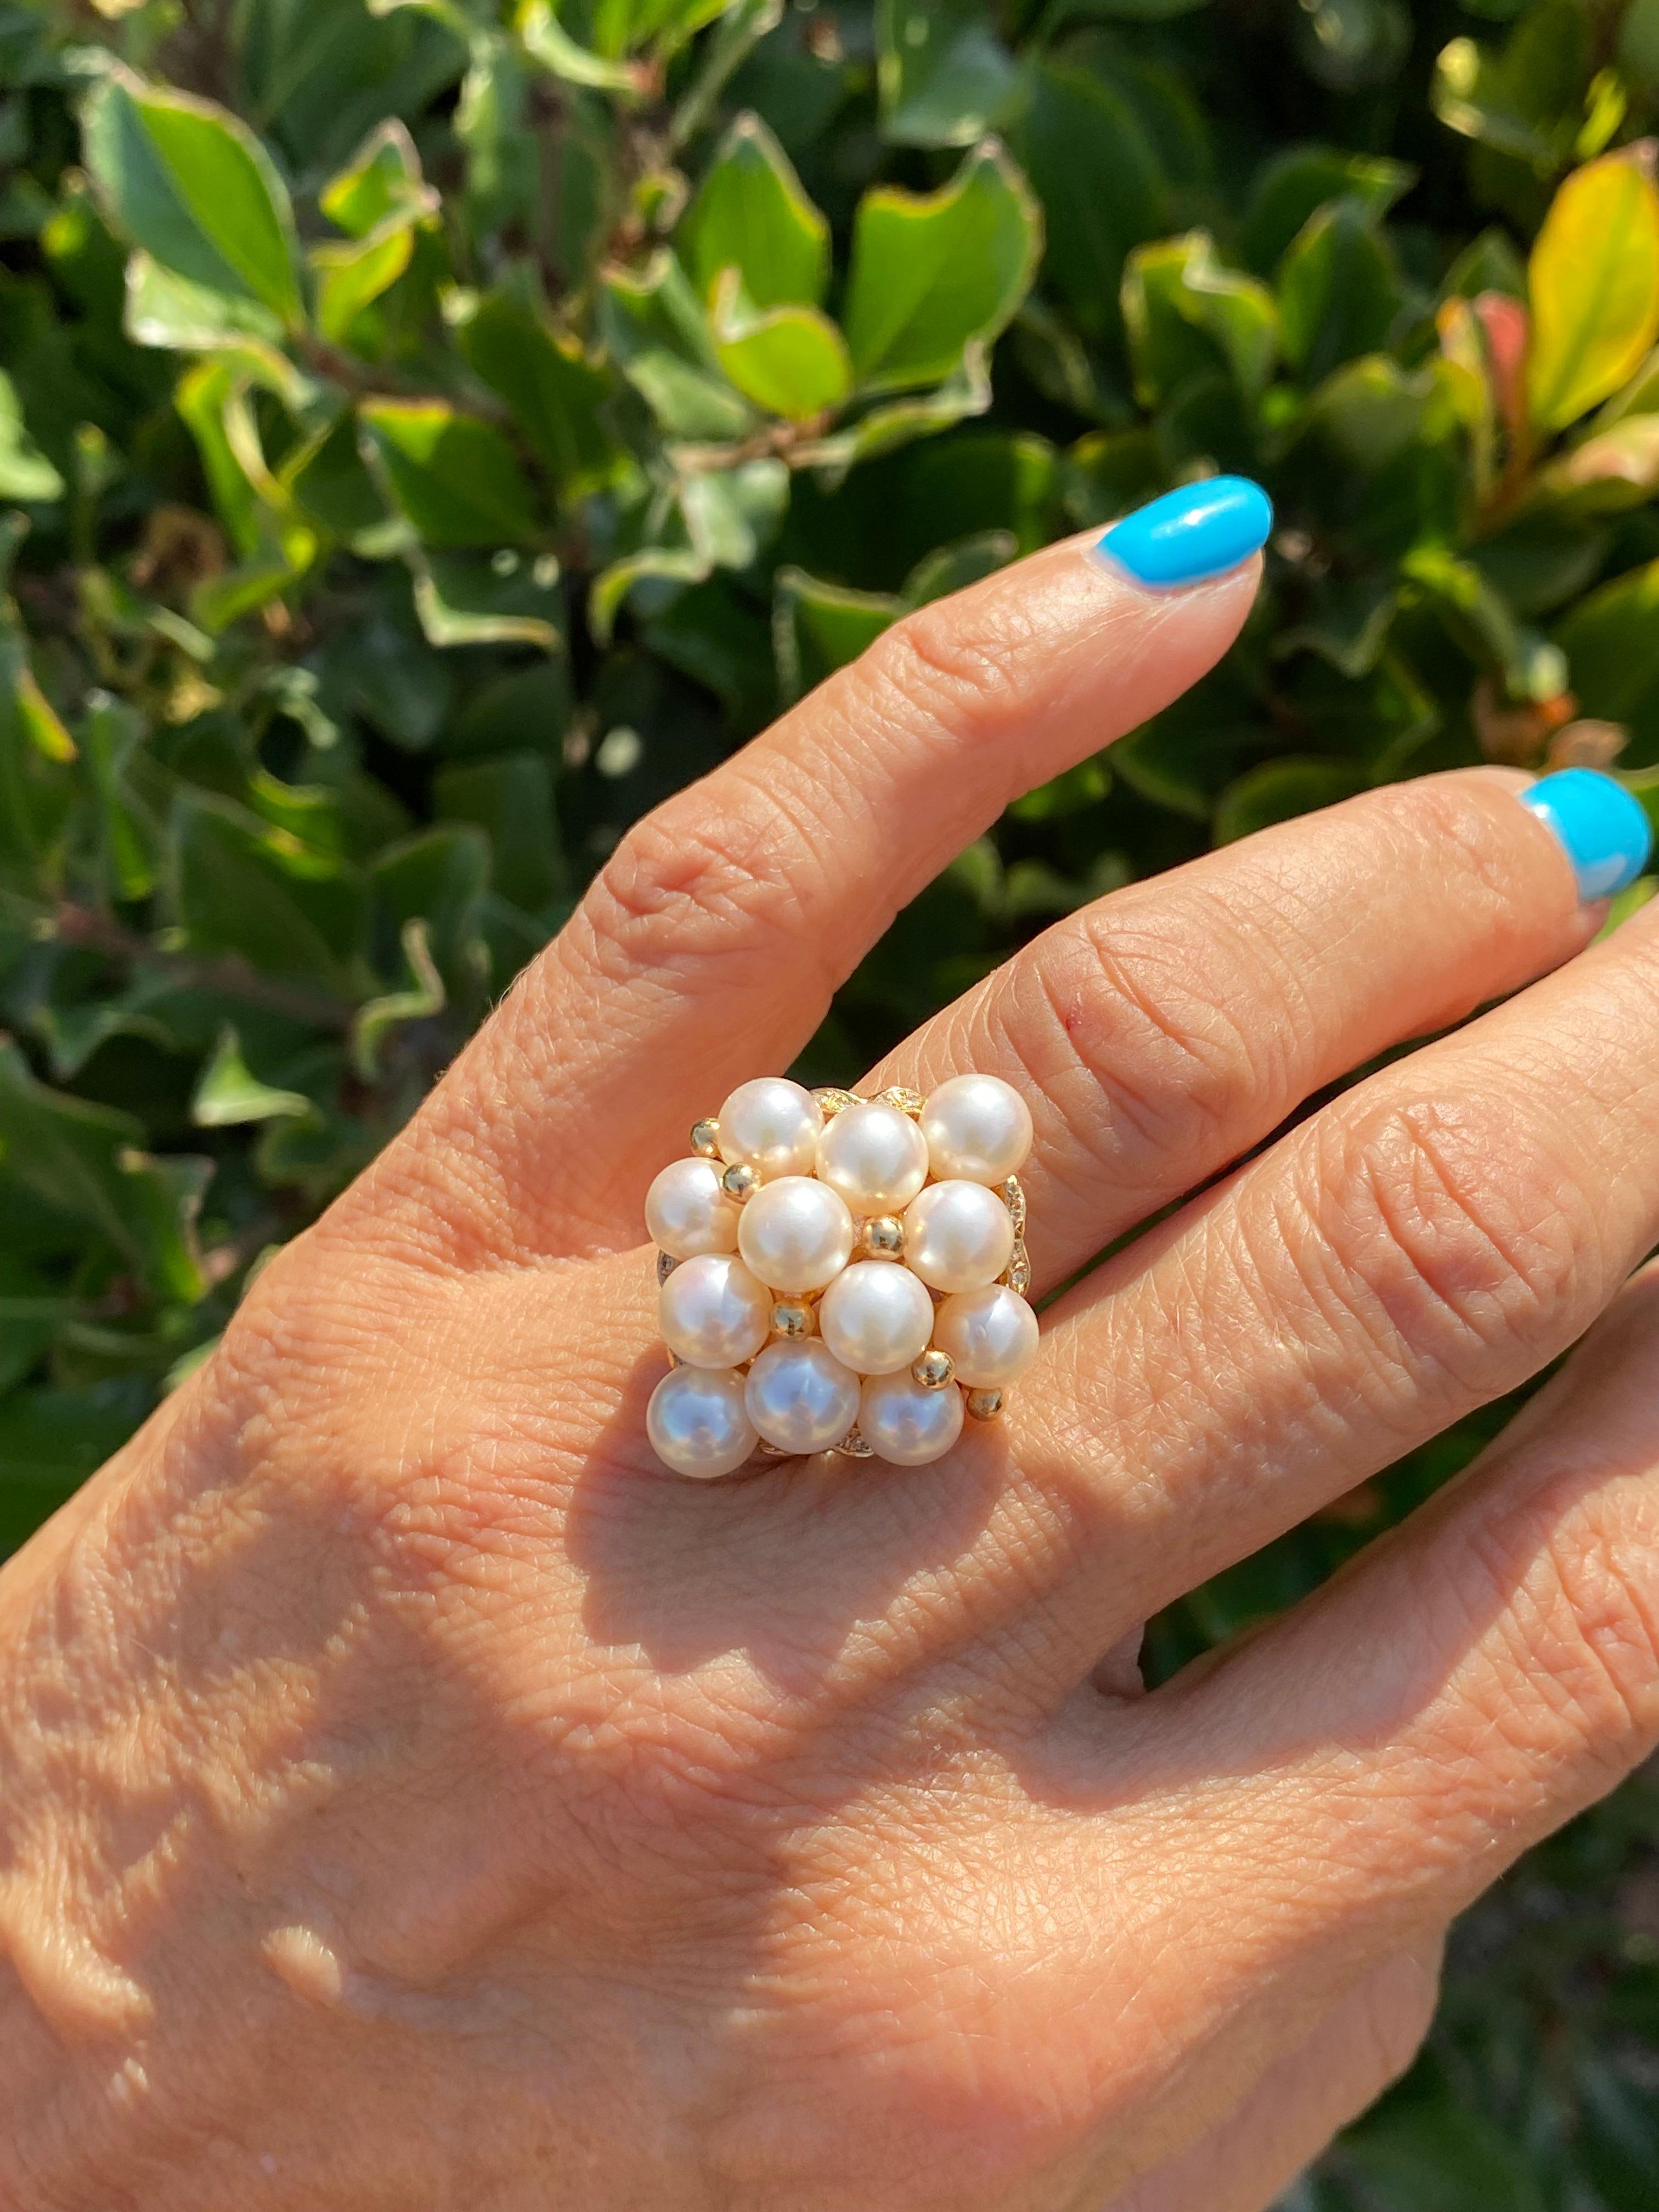 Diese Qualität Perle Ring ist üppig mit Glanz leuchtet aus passenden, Qualität AAA Perlen mit Diamanten in einem 14 Karat. Gelbgold Fassung gesetzt

12 unberührte Perlen sind in einem diamantförmigen Ring mit Diamantakzenten an den vier Ecken des